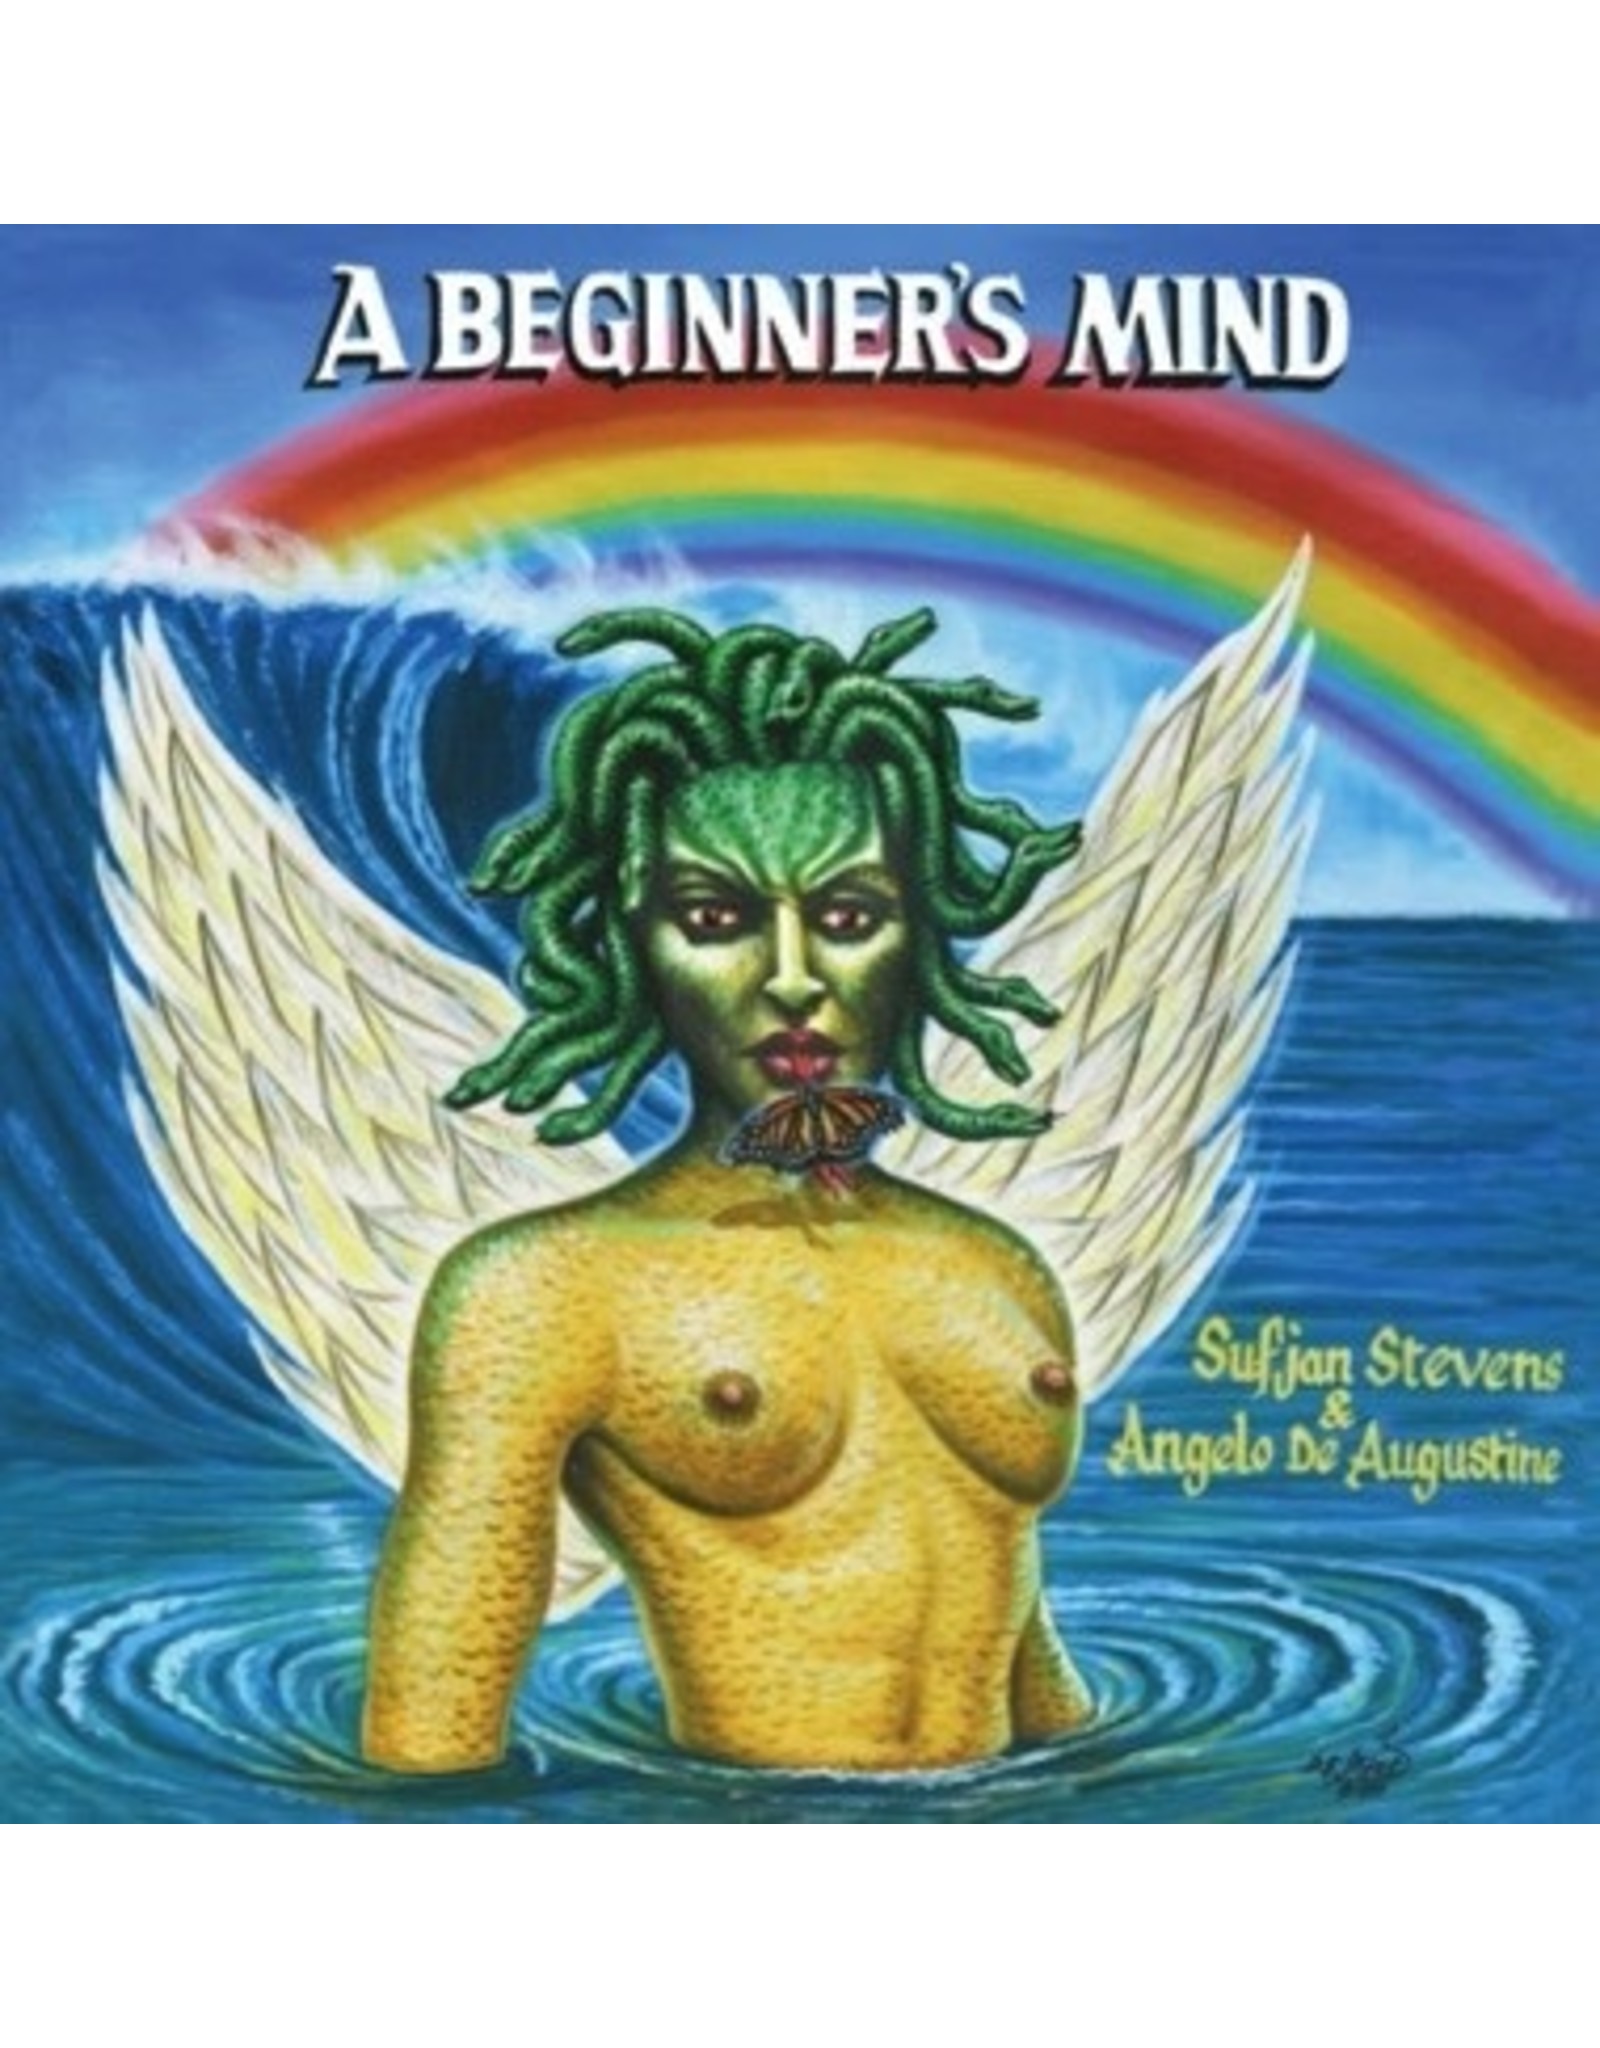 New Vinyl Sufjan Stevens & Angelo De Augustine - A Beginner's Mind (Colored) LP